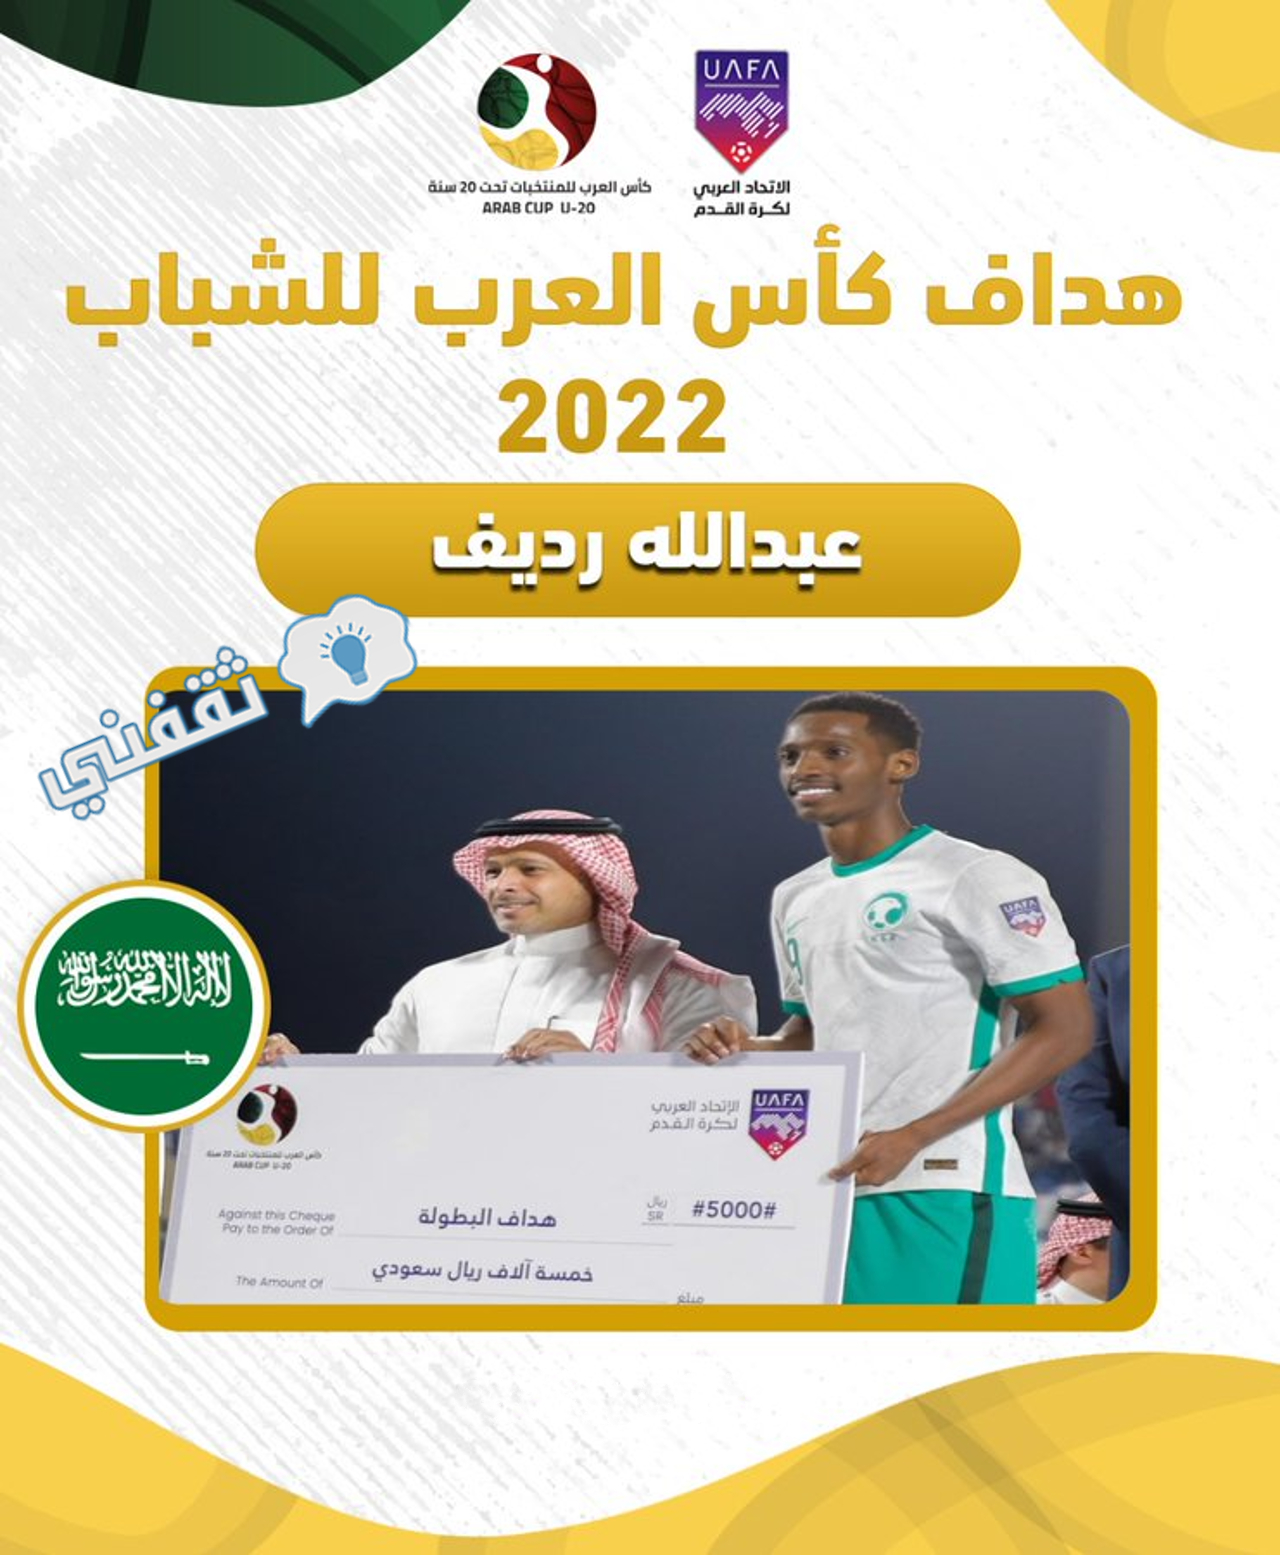 تتويج اللاعب السعودي عبدالله رديف بجائزة هداف بطولة كأس العرب للشباب 2022